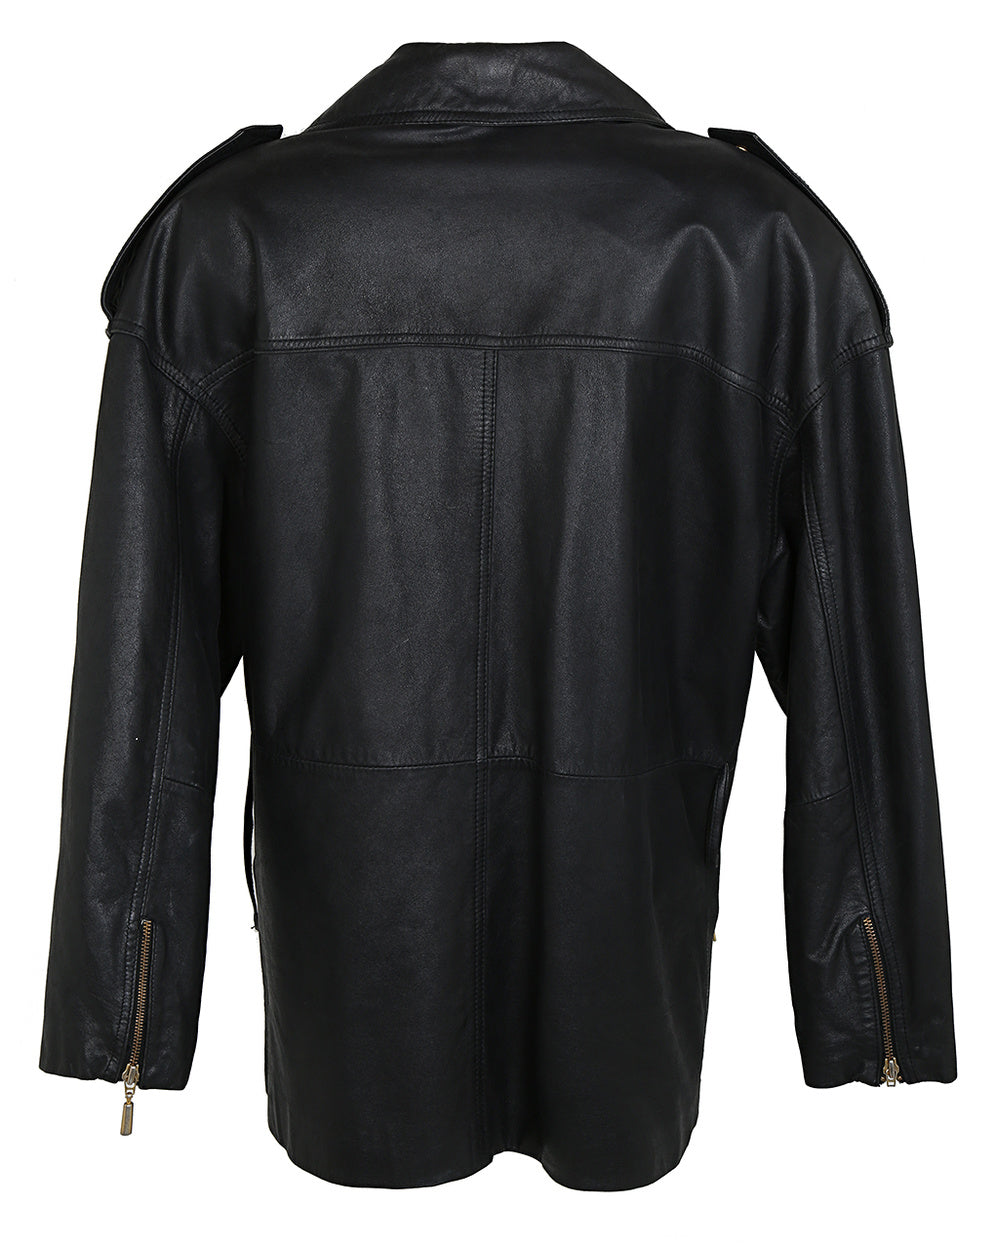 90s Danier Black Leather Biker Jacket - S